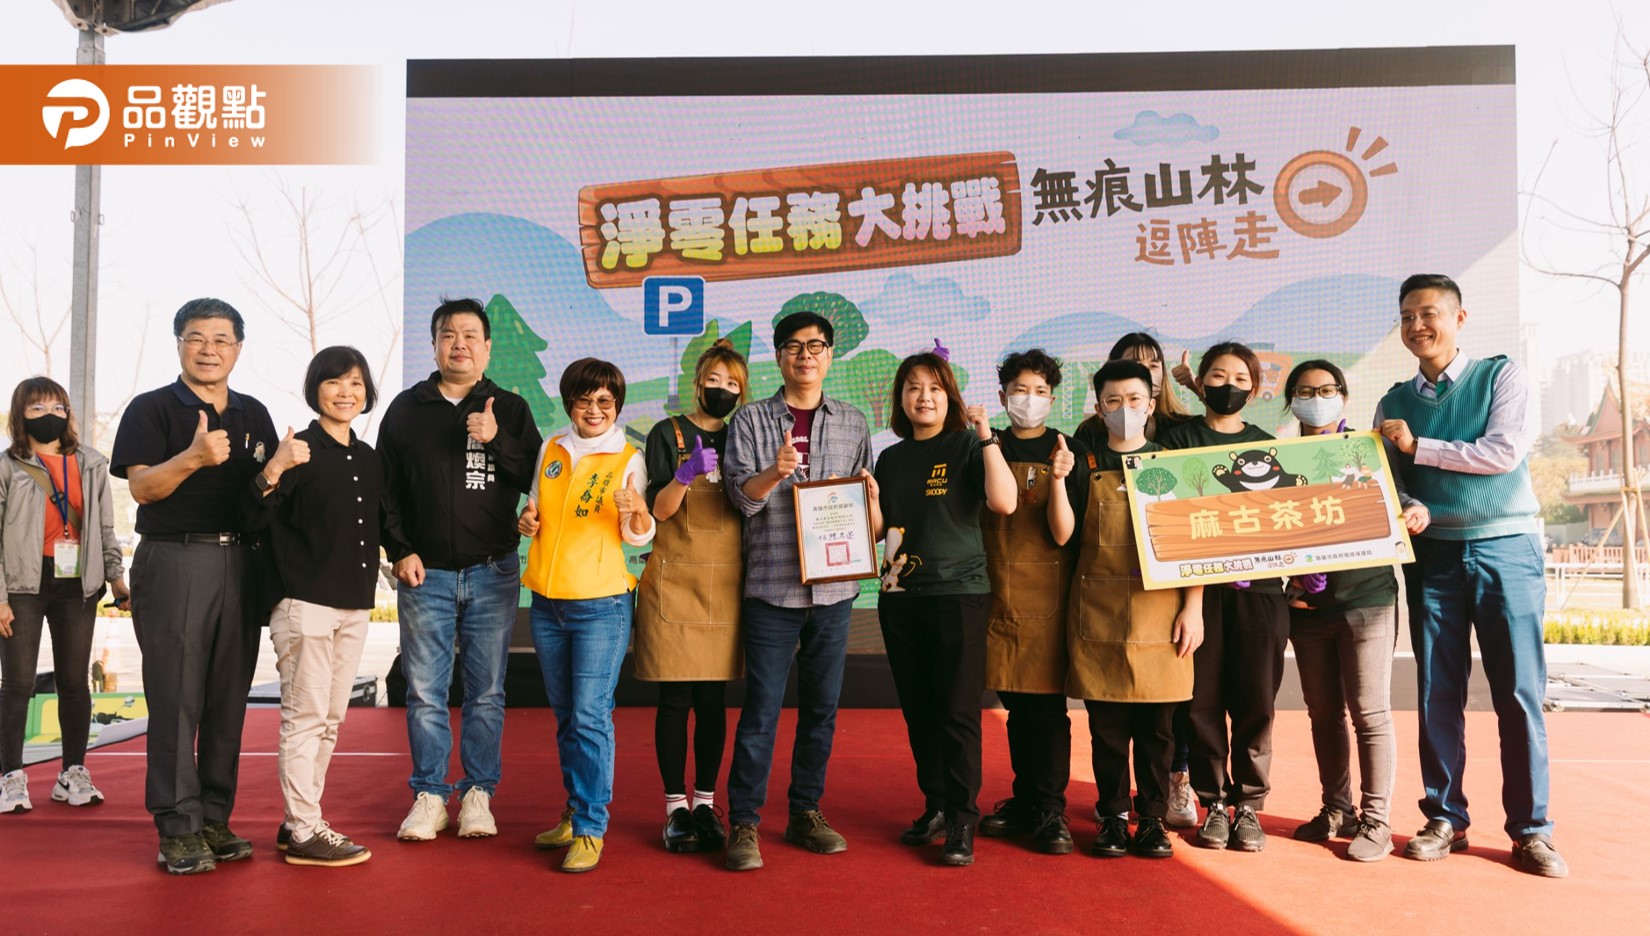 陳其邁出席低碳登山活動  呼籲民眾響應綠生活